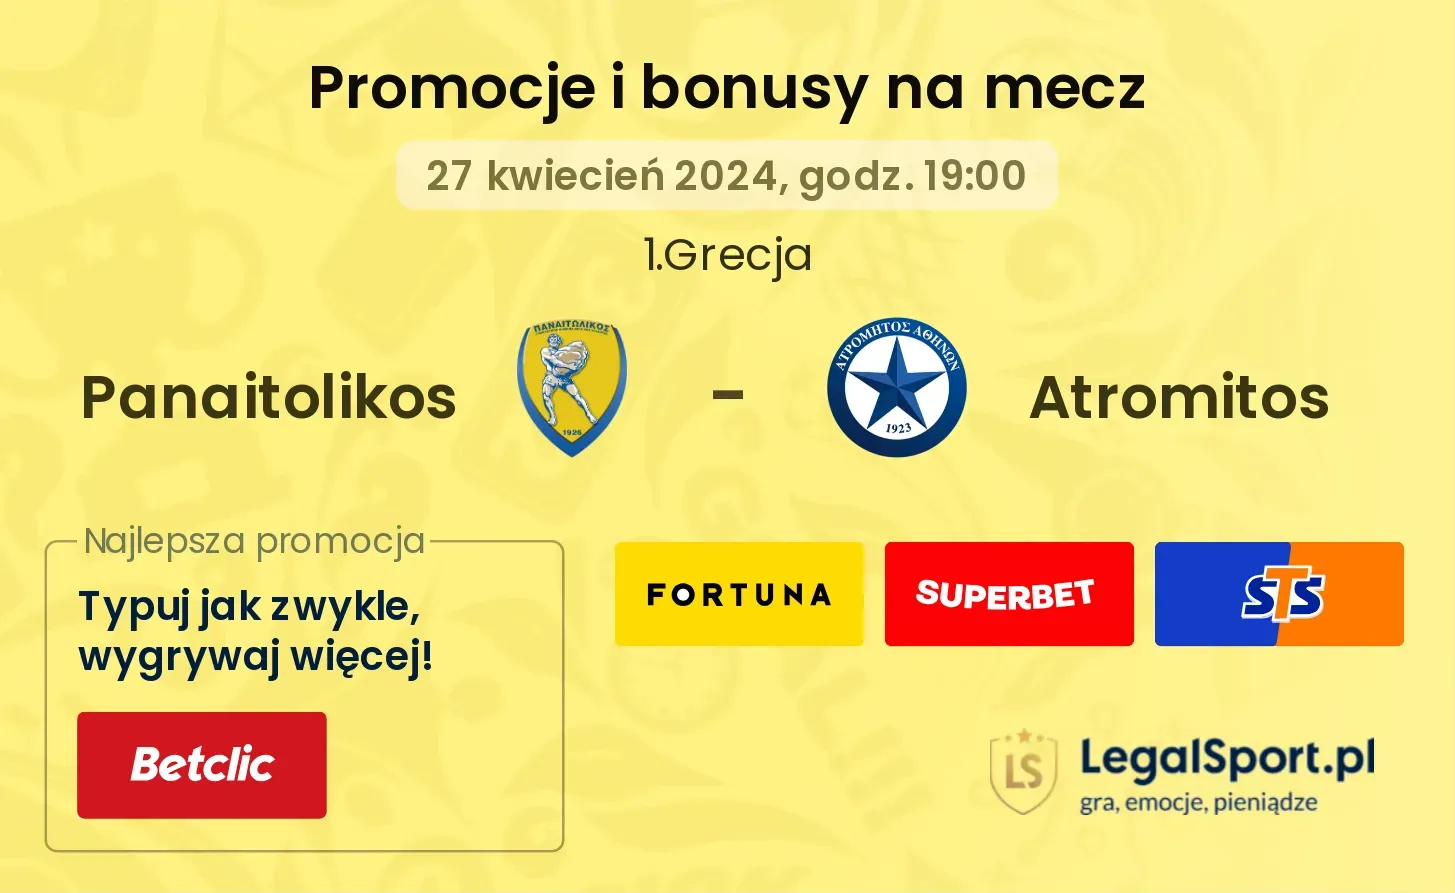 Panaitolikos - Atromitos promocje bonusy na mecz